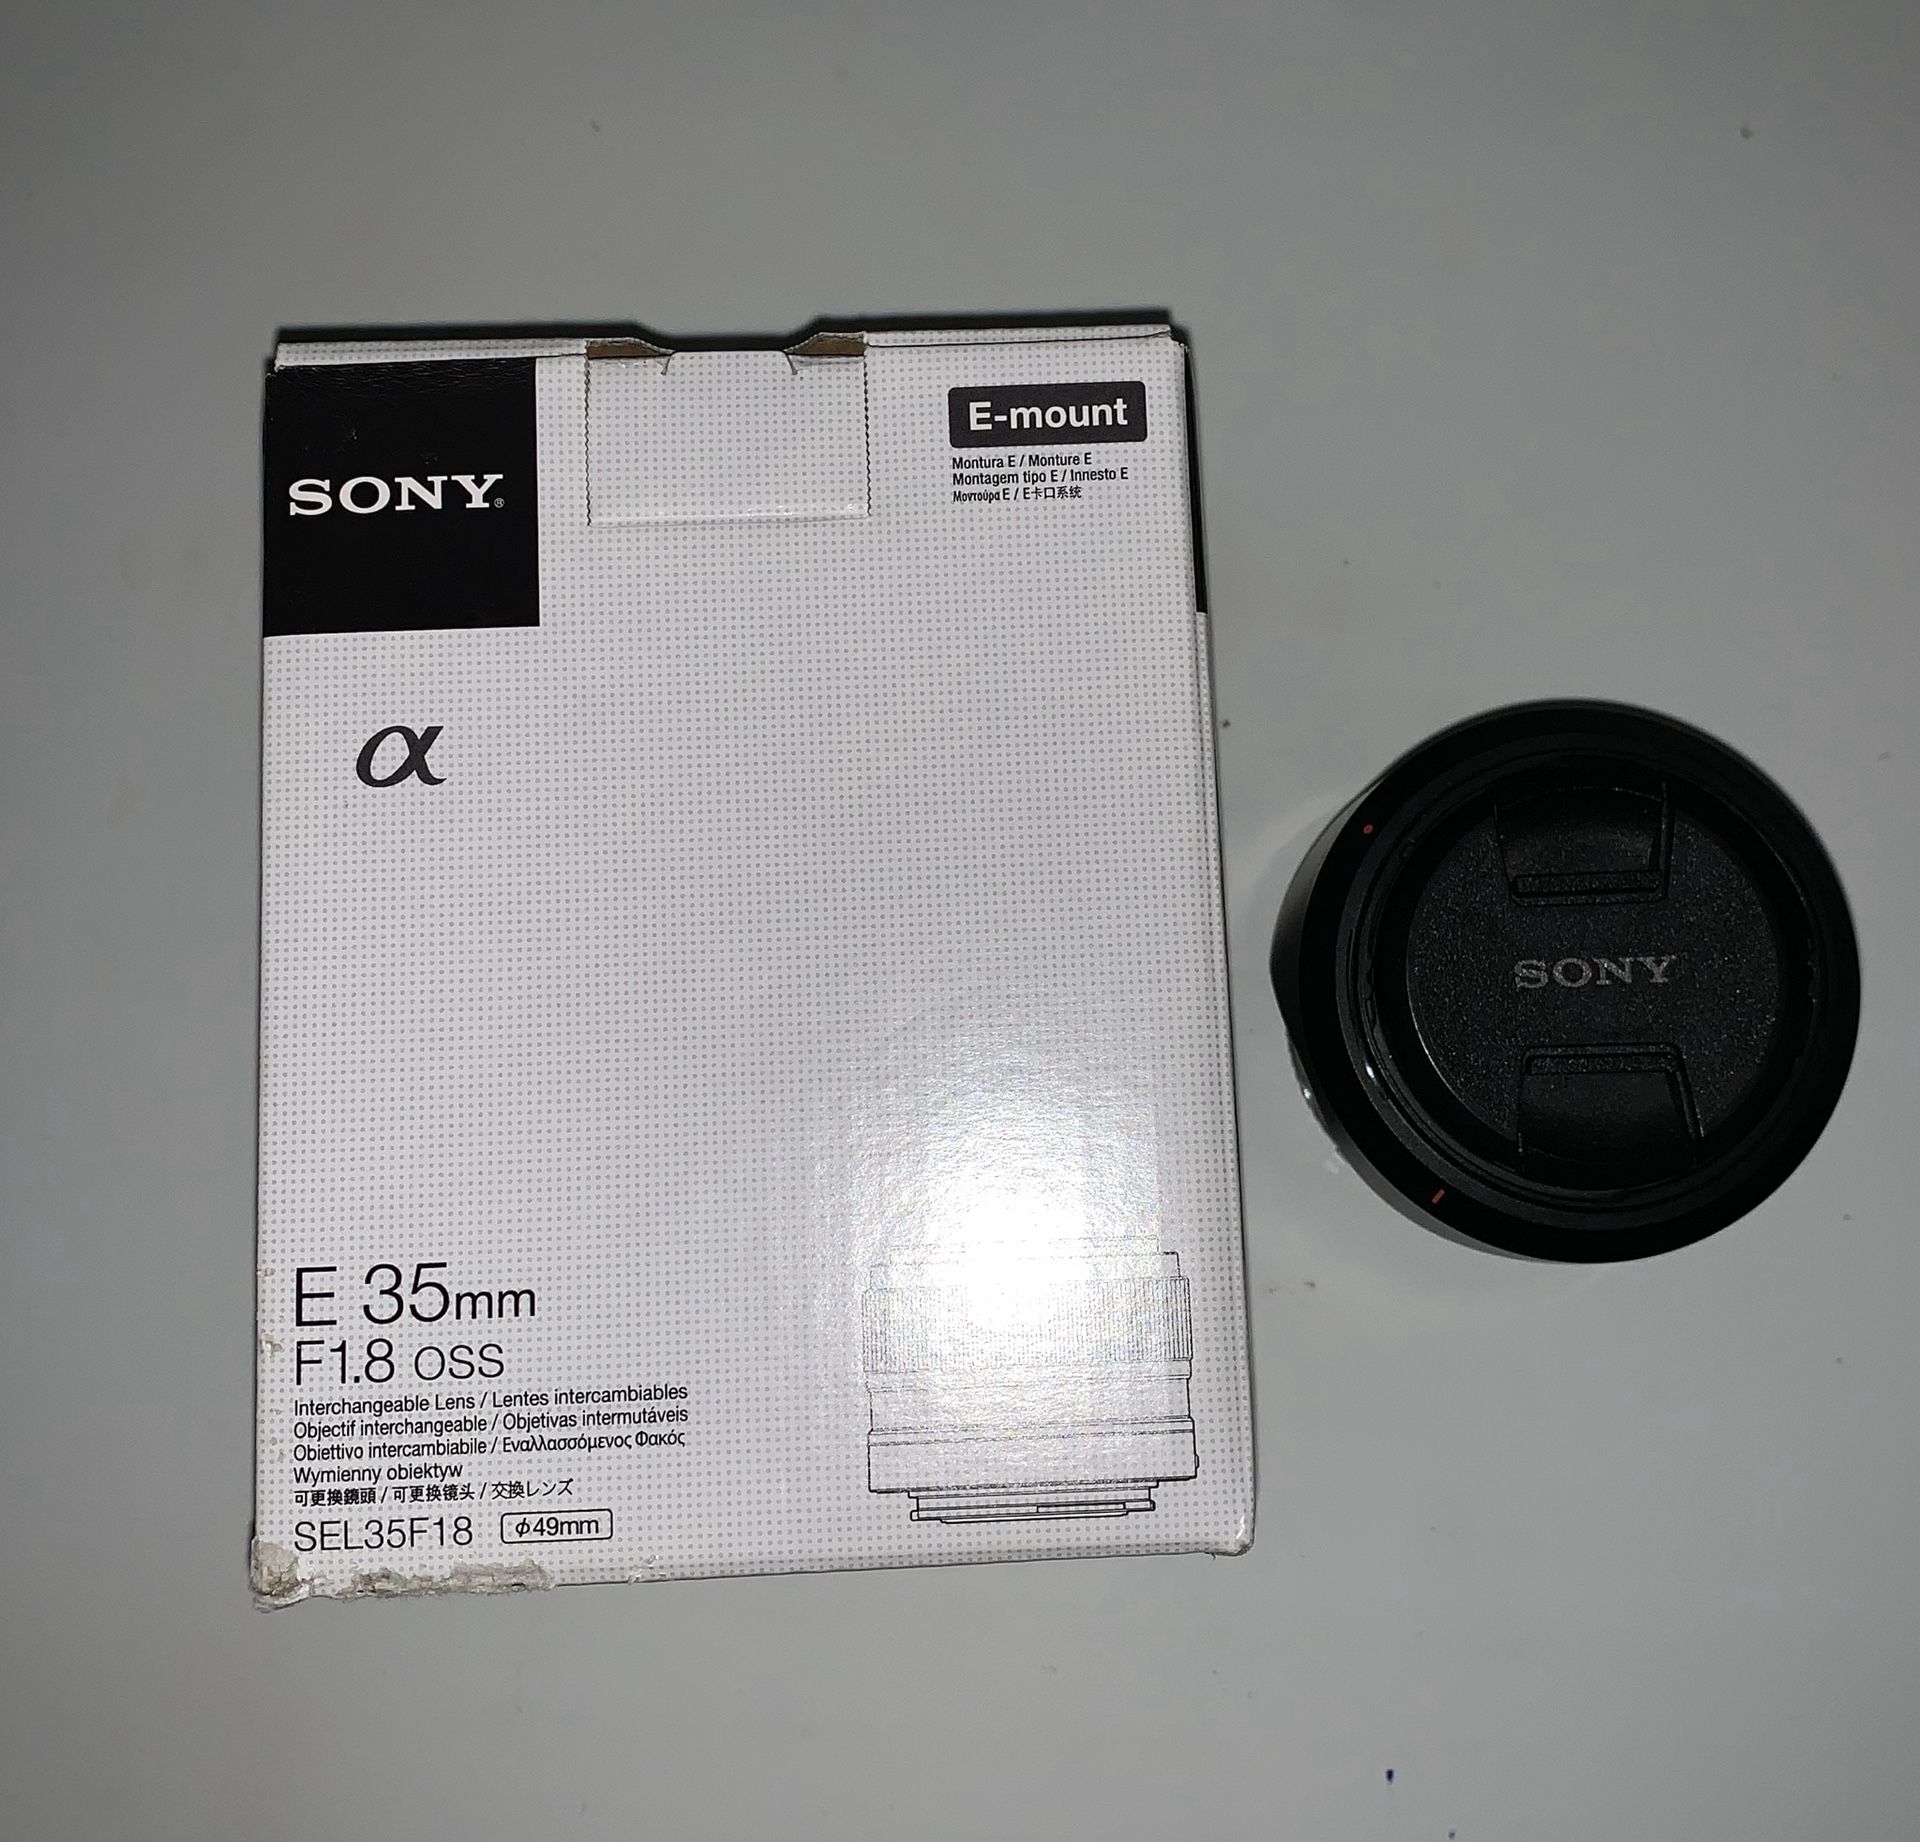 Sony E mount 35mm f/1.8 OSS lens